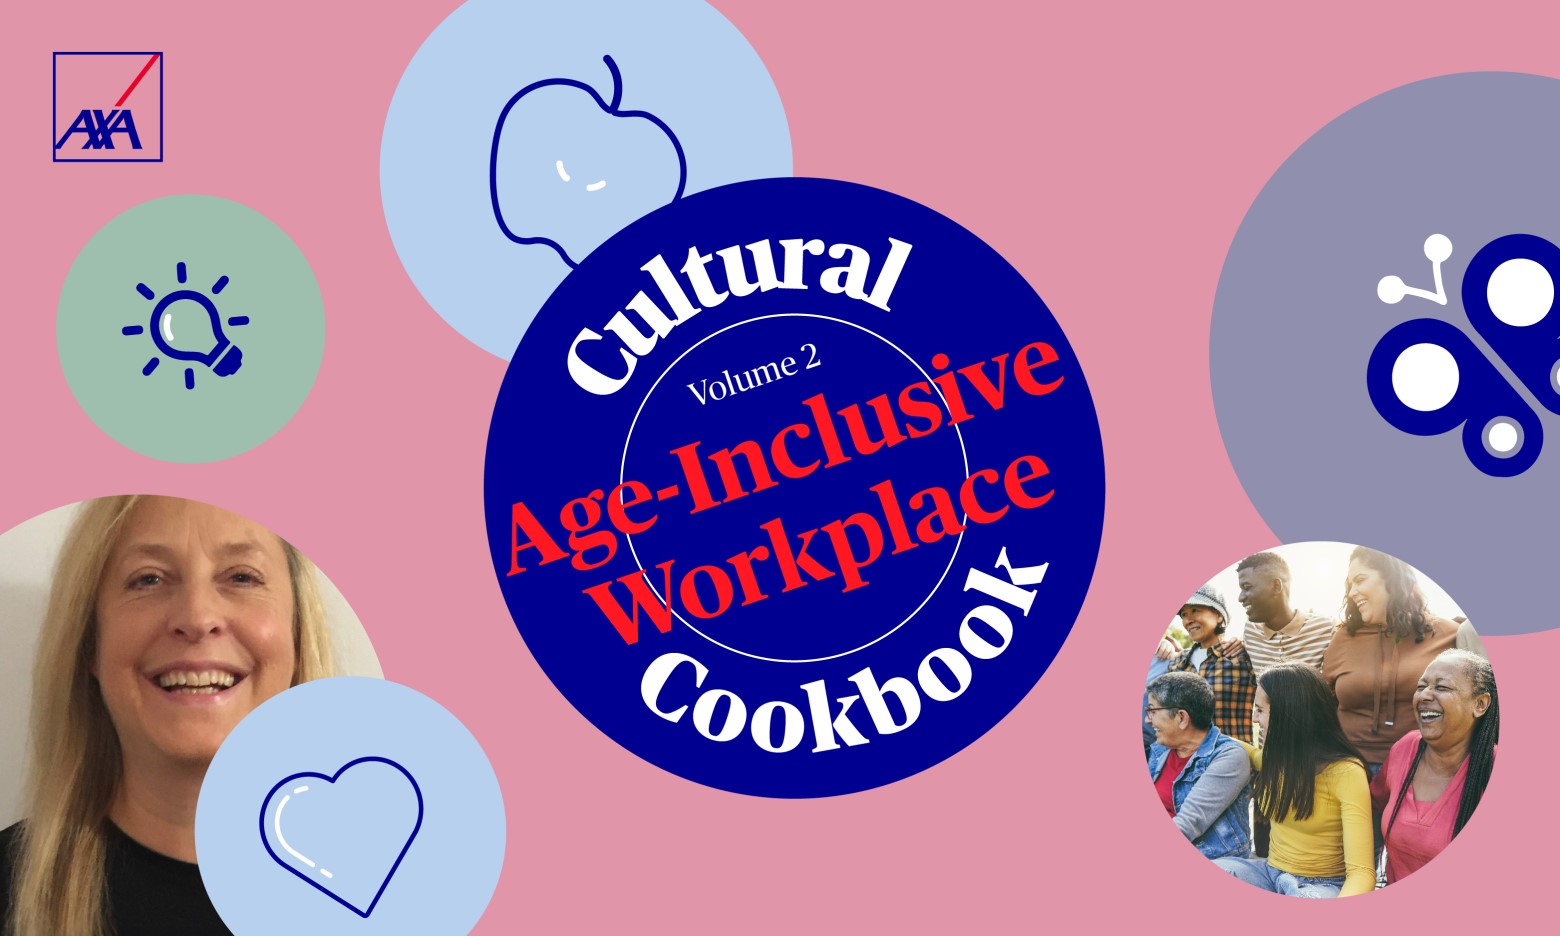 Cultural cookbook NEW